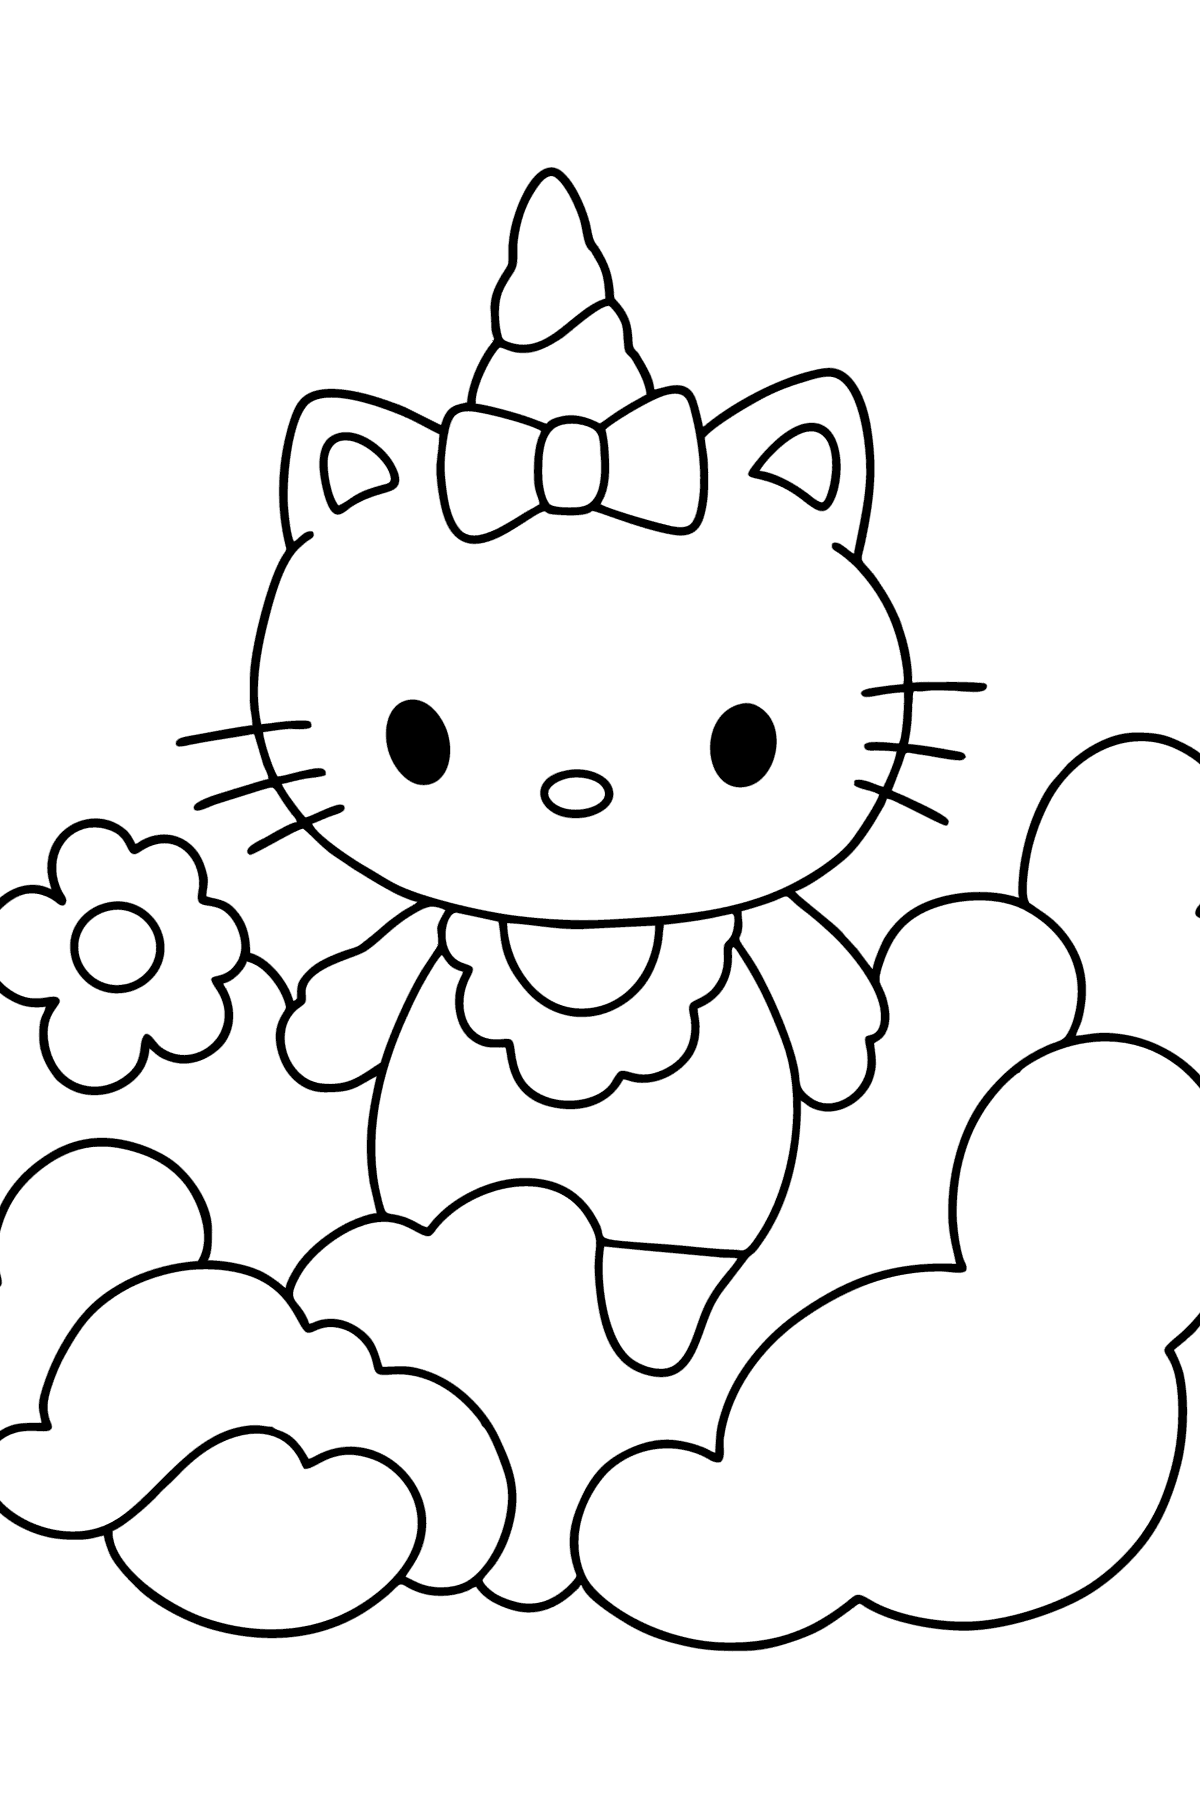 Раскраска Хелло Китти (Hello Kitty) единорог - Картинки для Детей